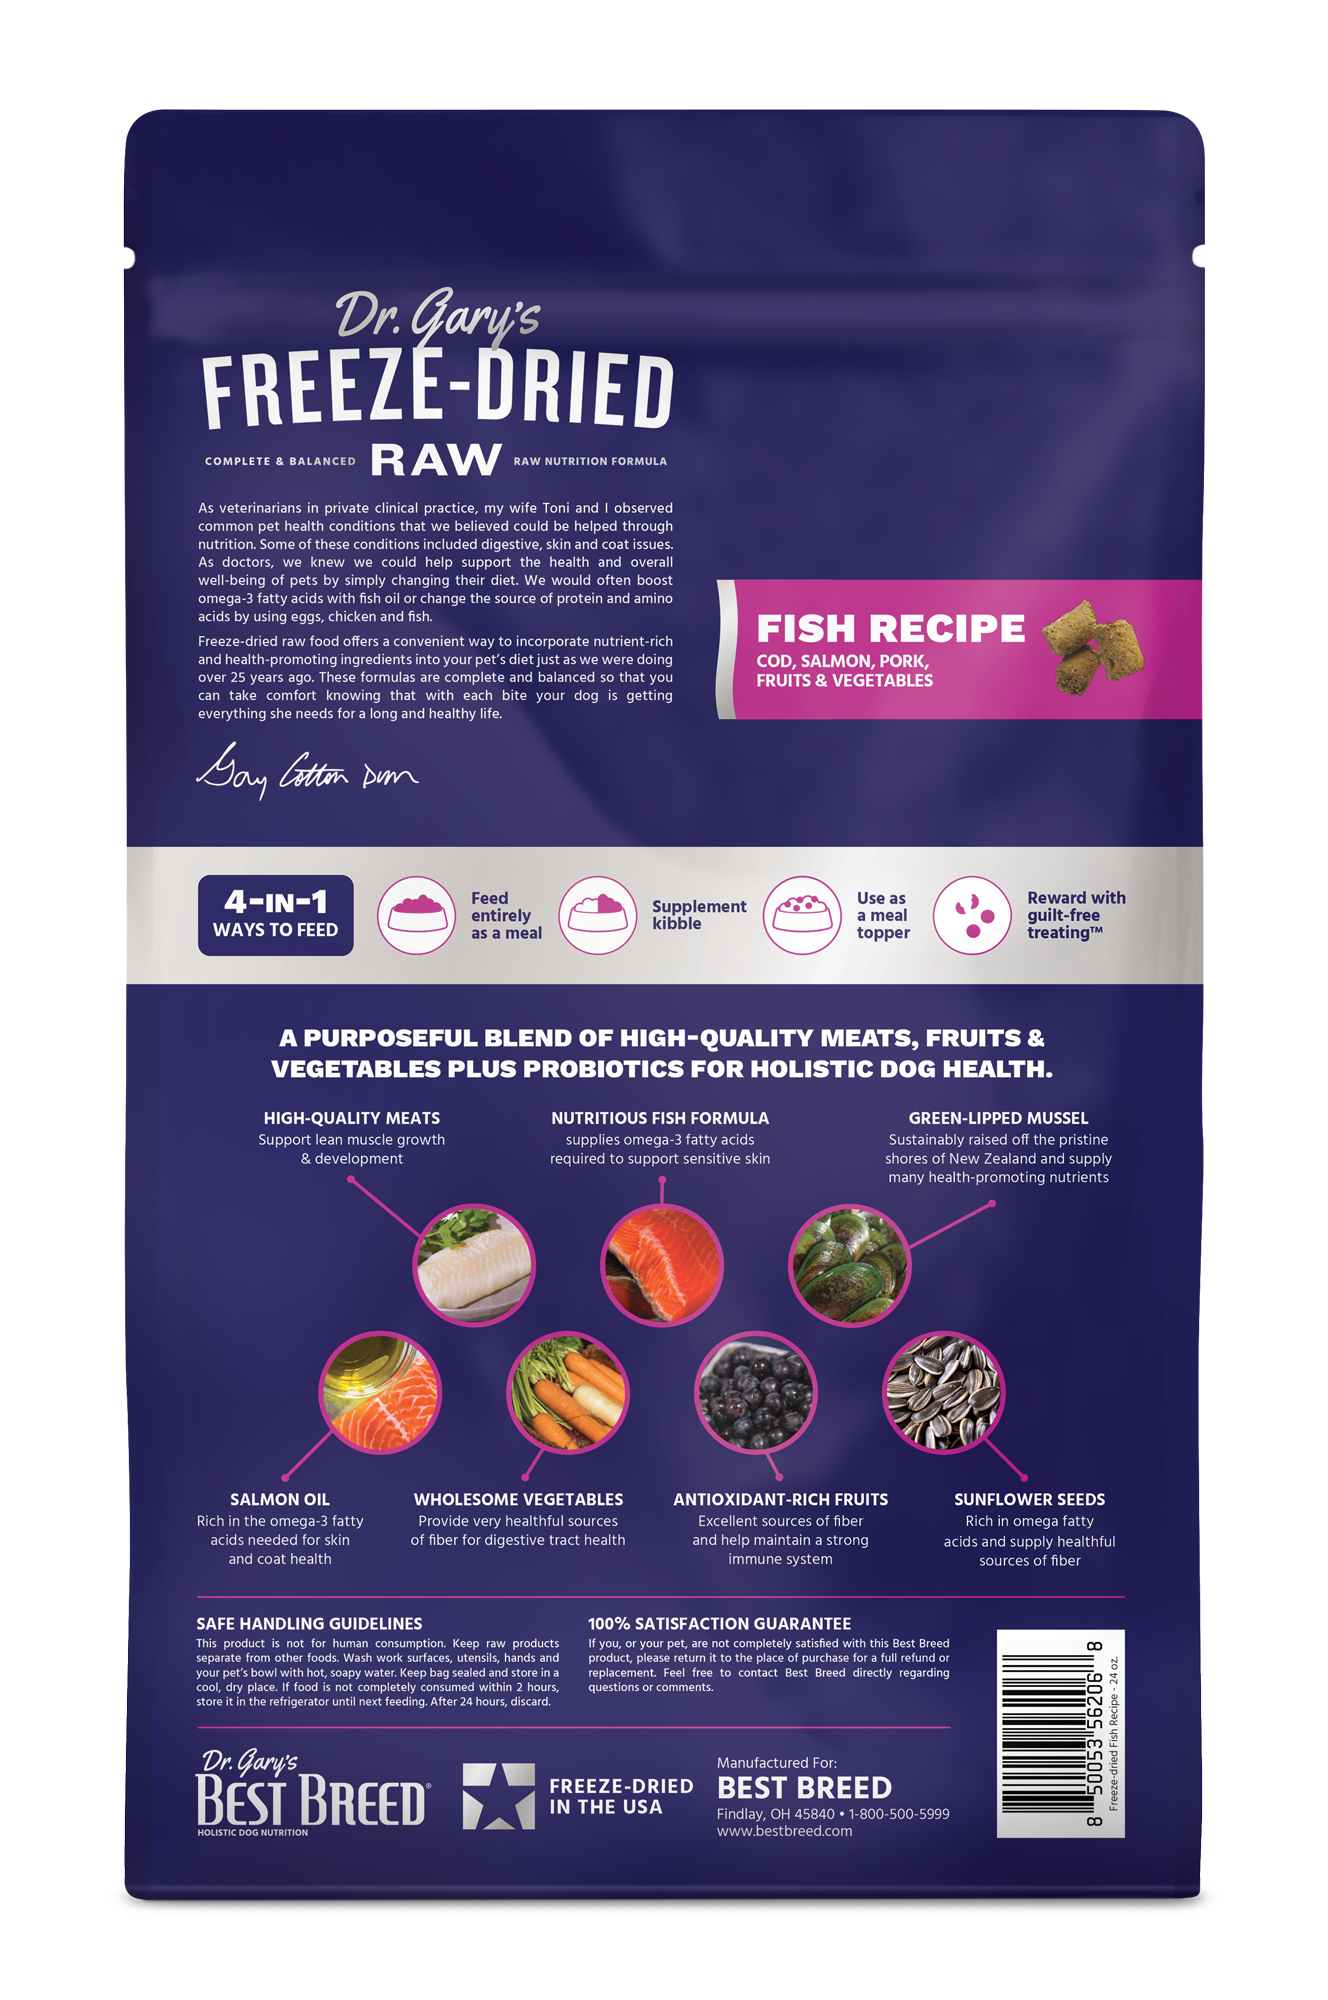 
                  
                    Best Breed Freeze-dried Fish Recipe
                  
                